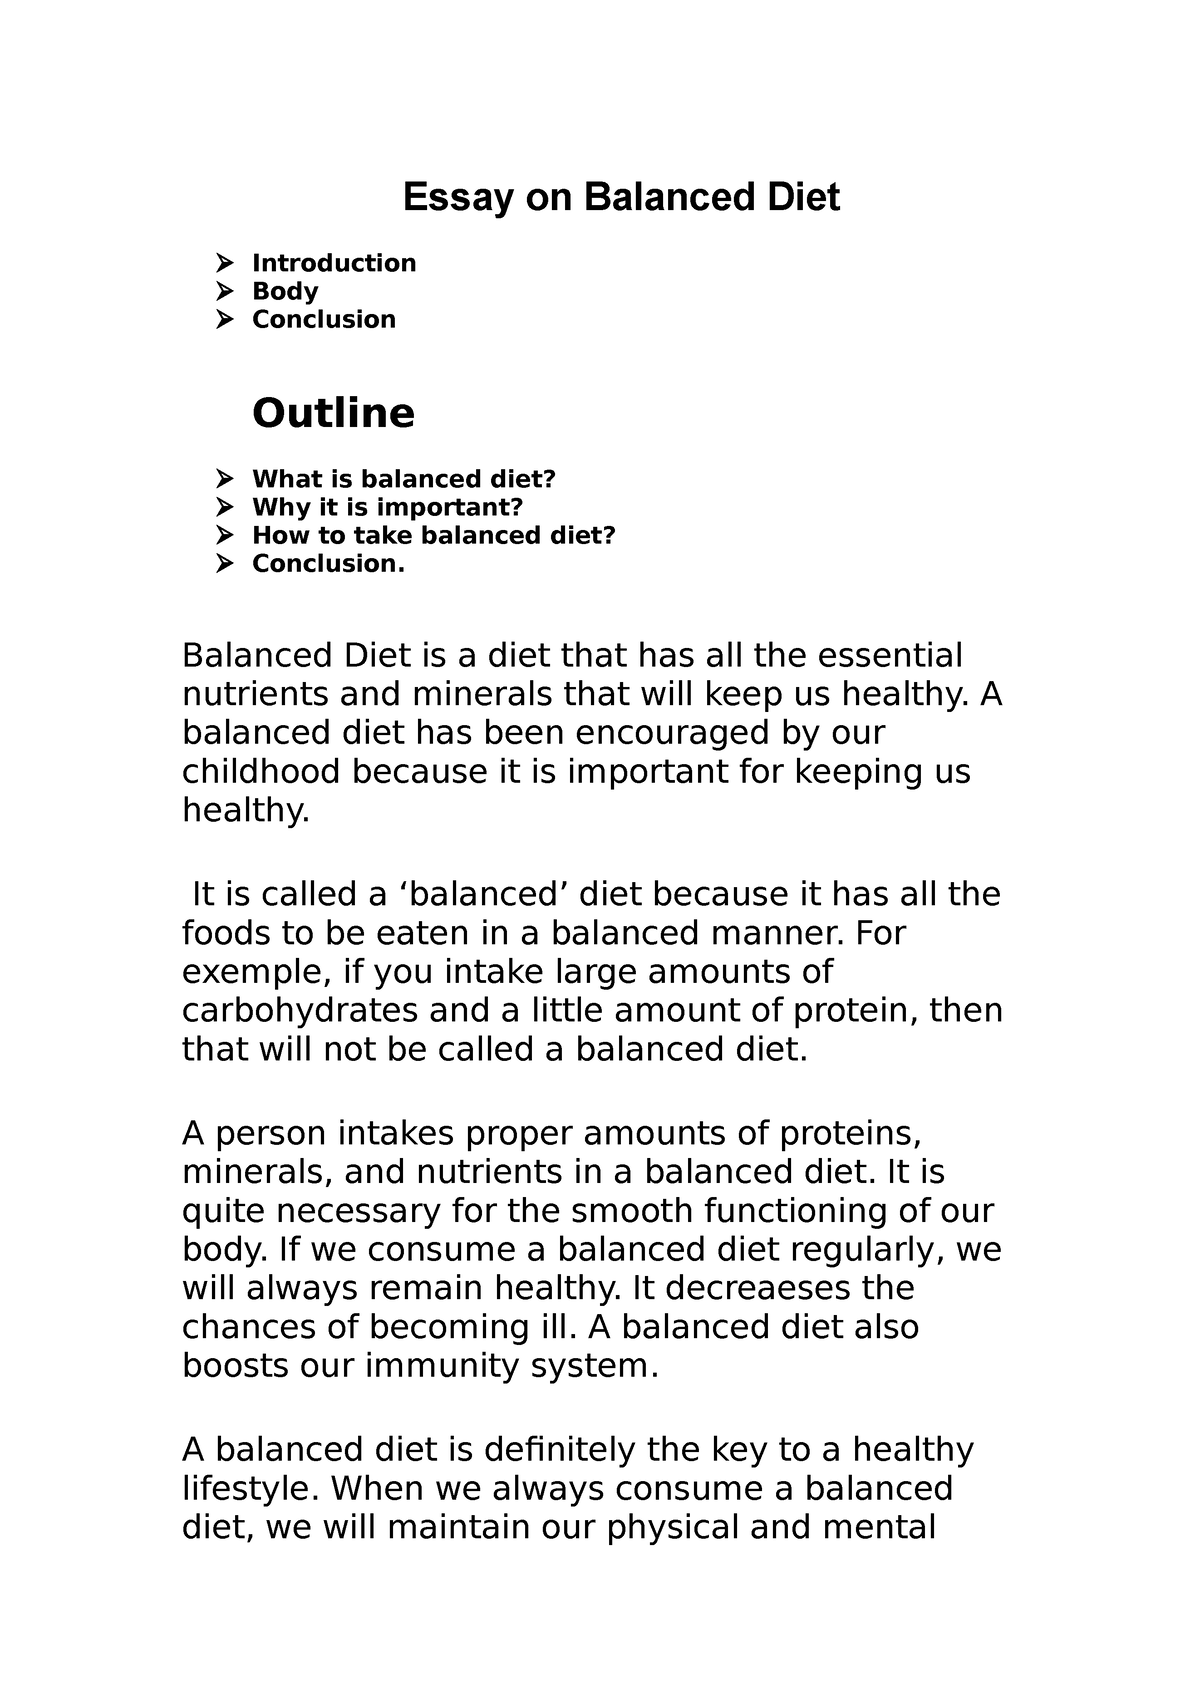 essay on balanced diet in 500 words